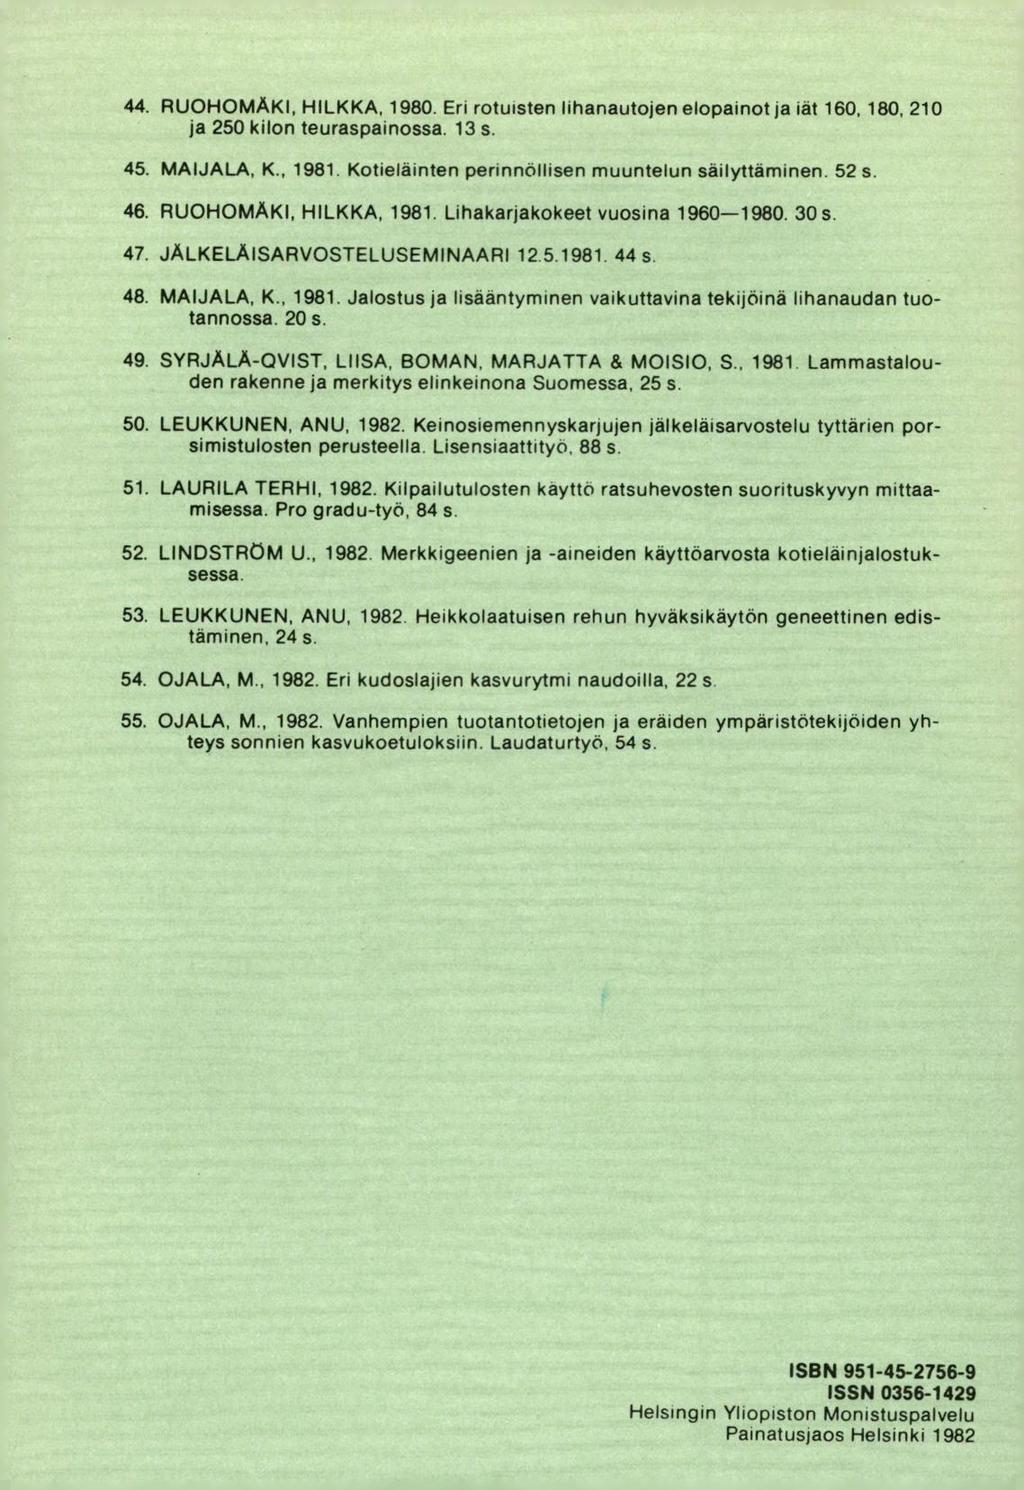 RUOHOMÄKI, HILKKA, 1980. Eri rotuisten lihanautojen elopainot ja iät 160, 180. 210 ja 250 kilon teuraspainossa. 13 s. MAIJALA, K., 1981. Kotieläinten perinnollisen muuntelun säilyttäminen. 52 s.